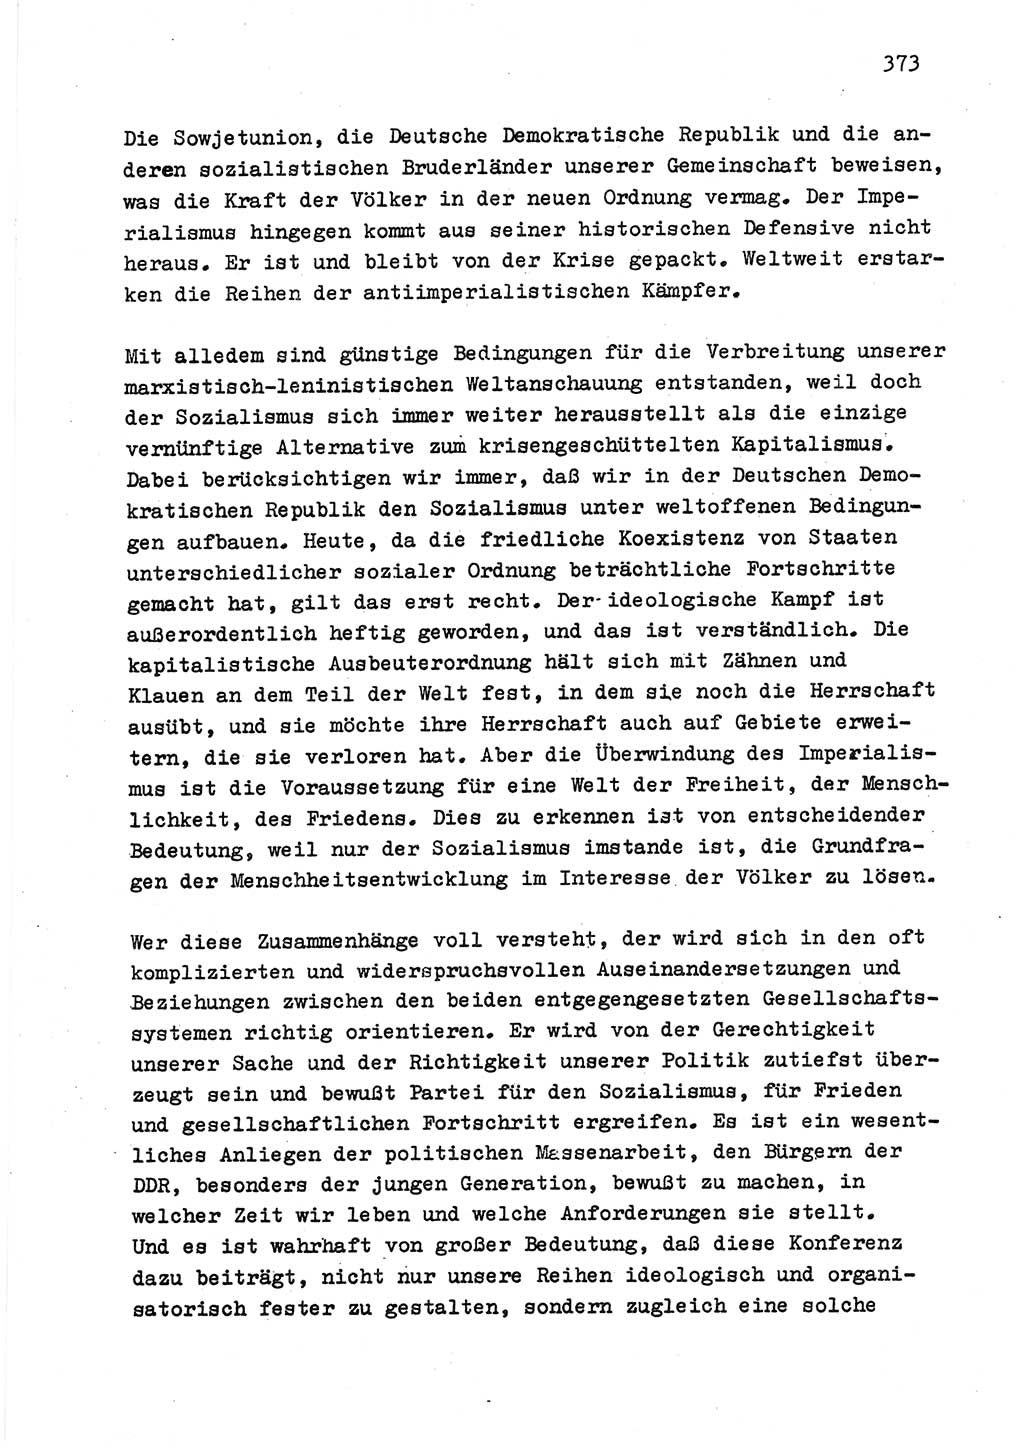 Zu Fragen der Parteiarbeit [Sozialistische Einheitspartei Deutschlands (SED) Deutsche Demokratische Republik (DDR)] 1979, Seite 373 (Fr. PA SED DDR 1979, S. 373)